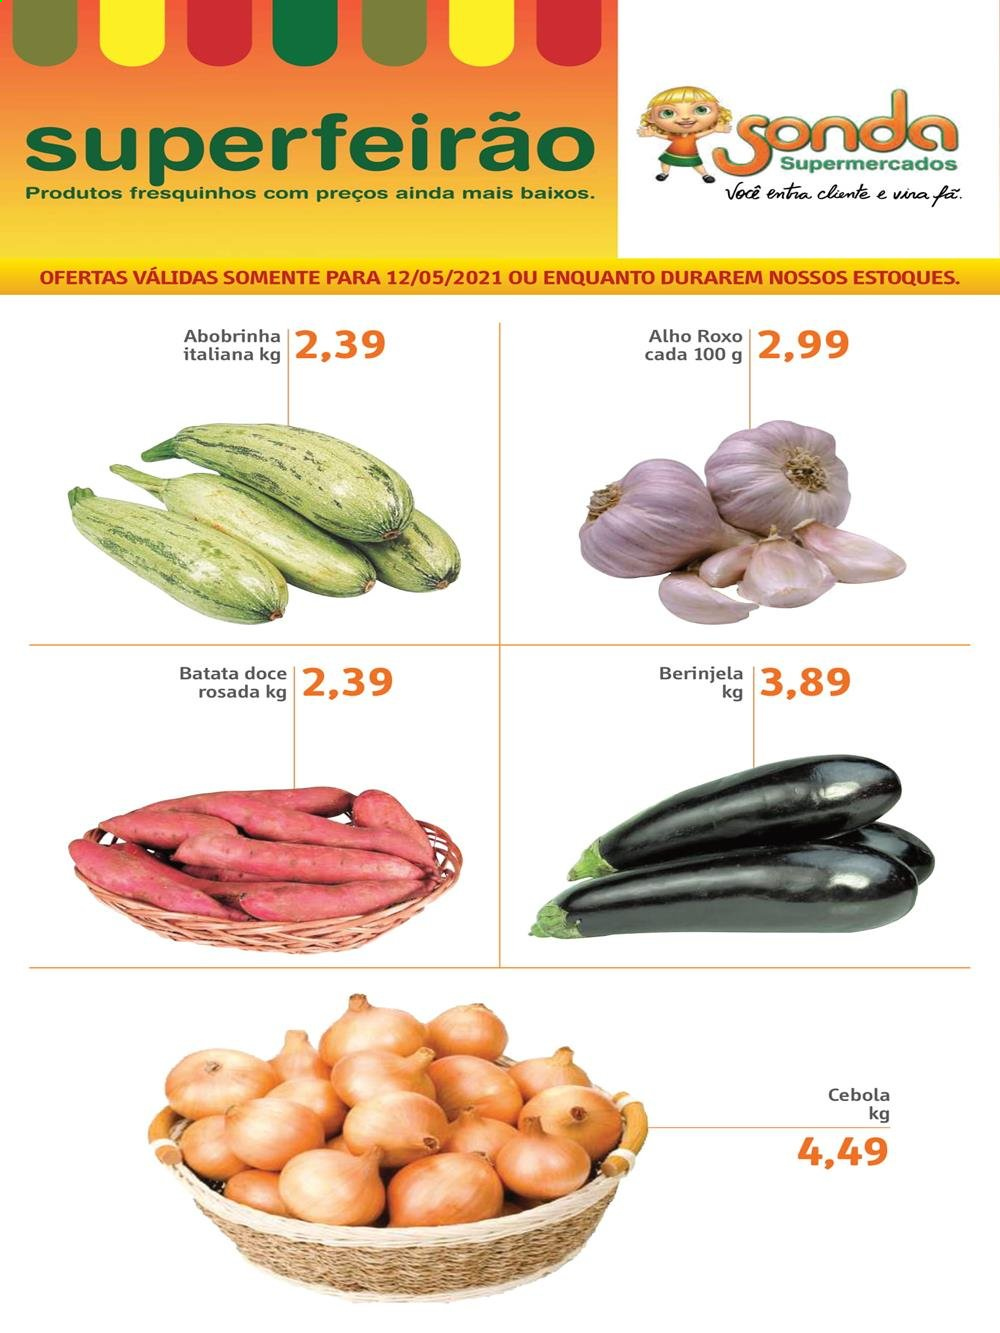 thumbnail - Folheto Sonda Supermercados - 12/05/2021 - 12/05/2021 - Produtos em promoção - batata-doce, abobrinha, alho, cebola. Página 1.